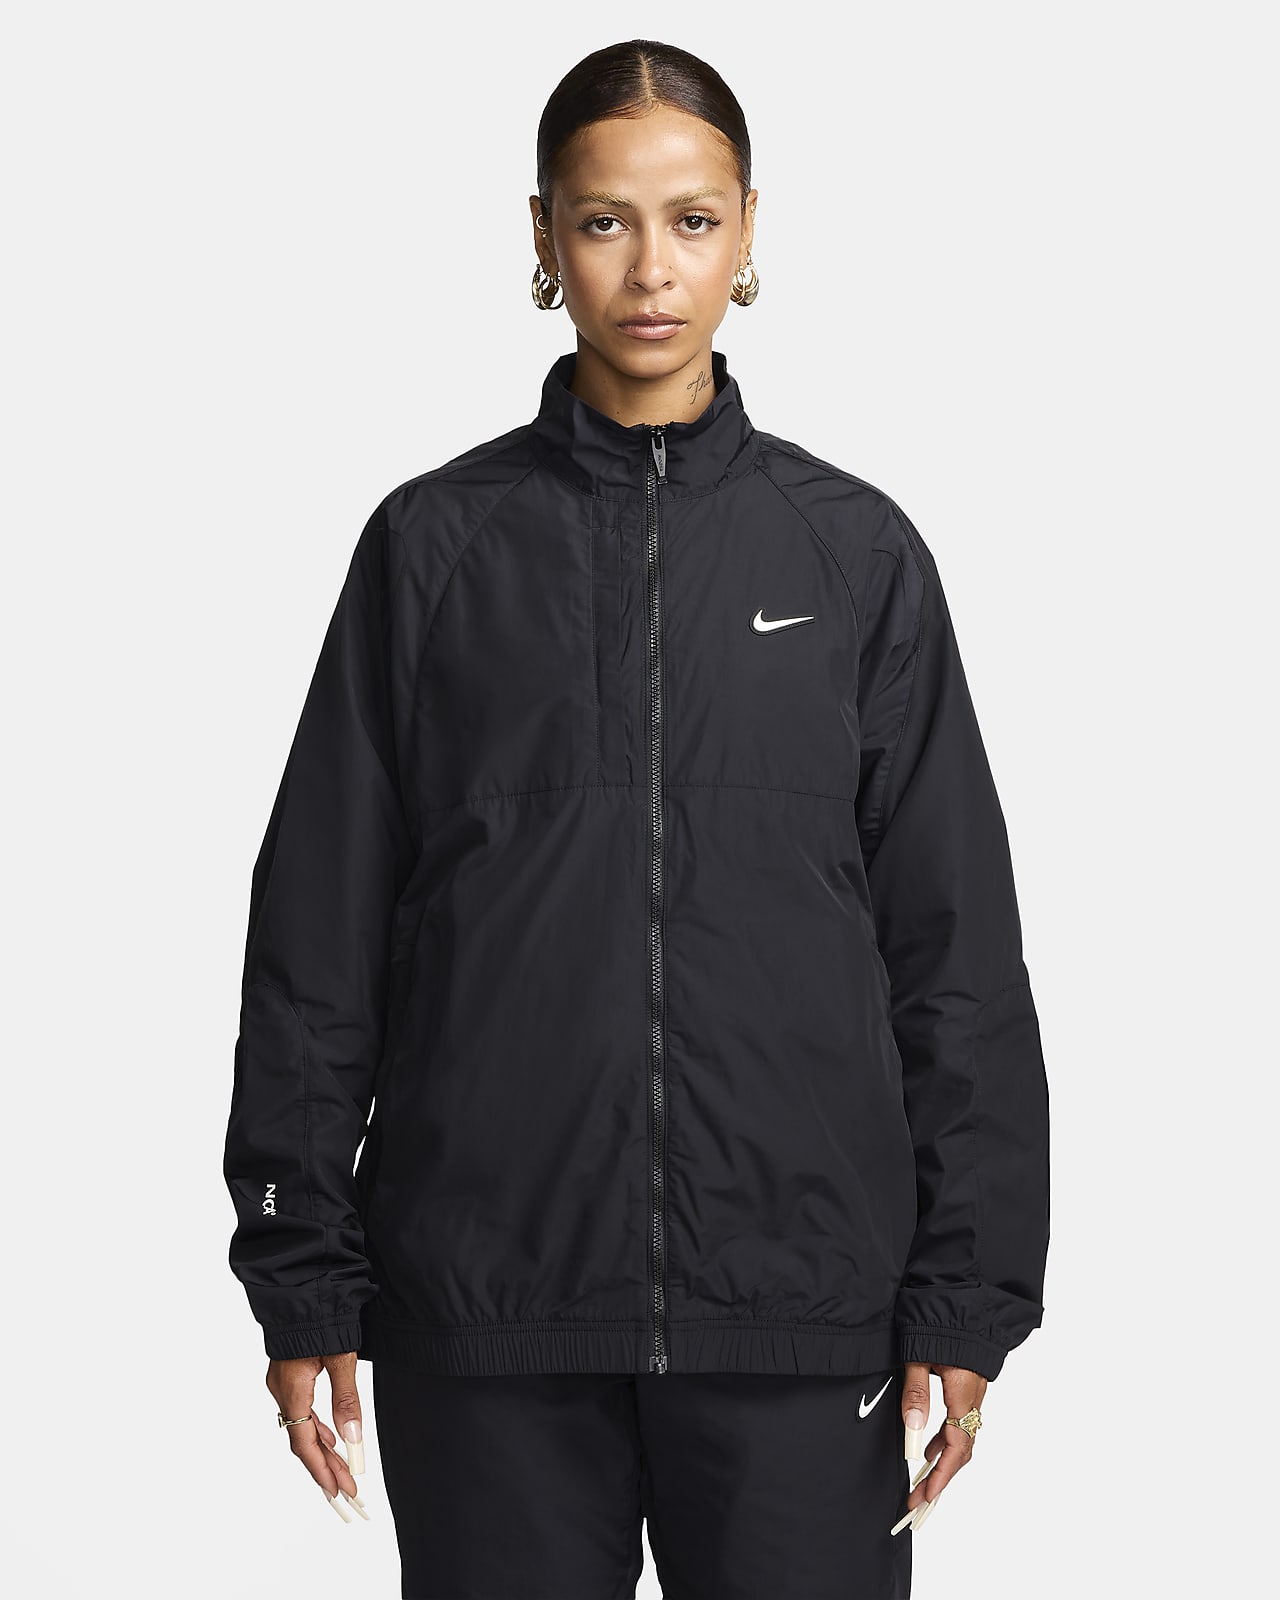 NOCTA Nylon Tracksuit Jacket. Nike ID